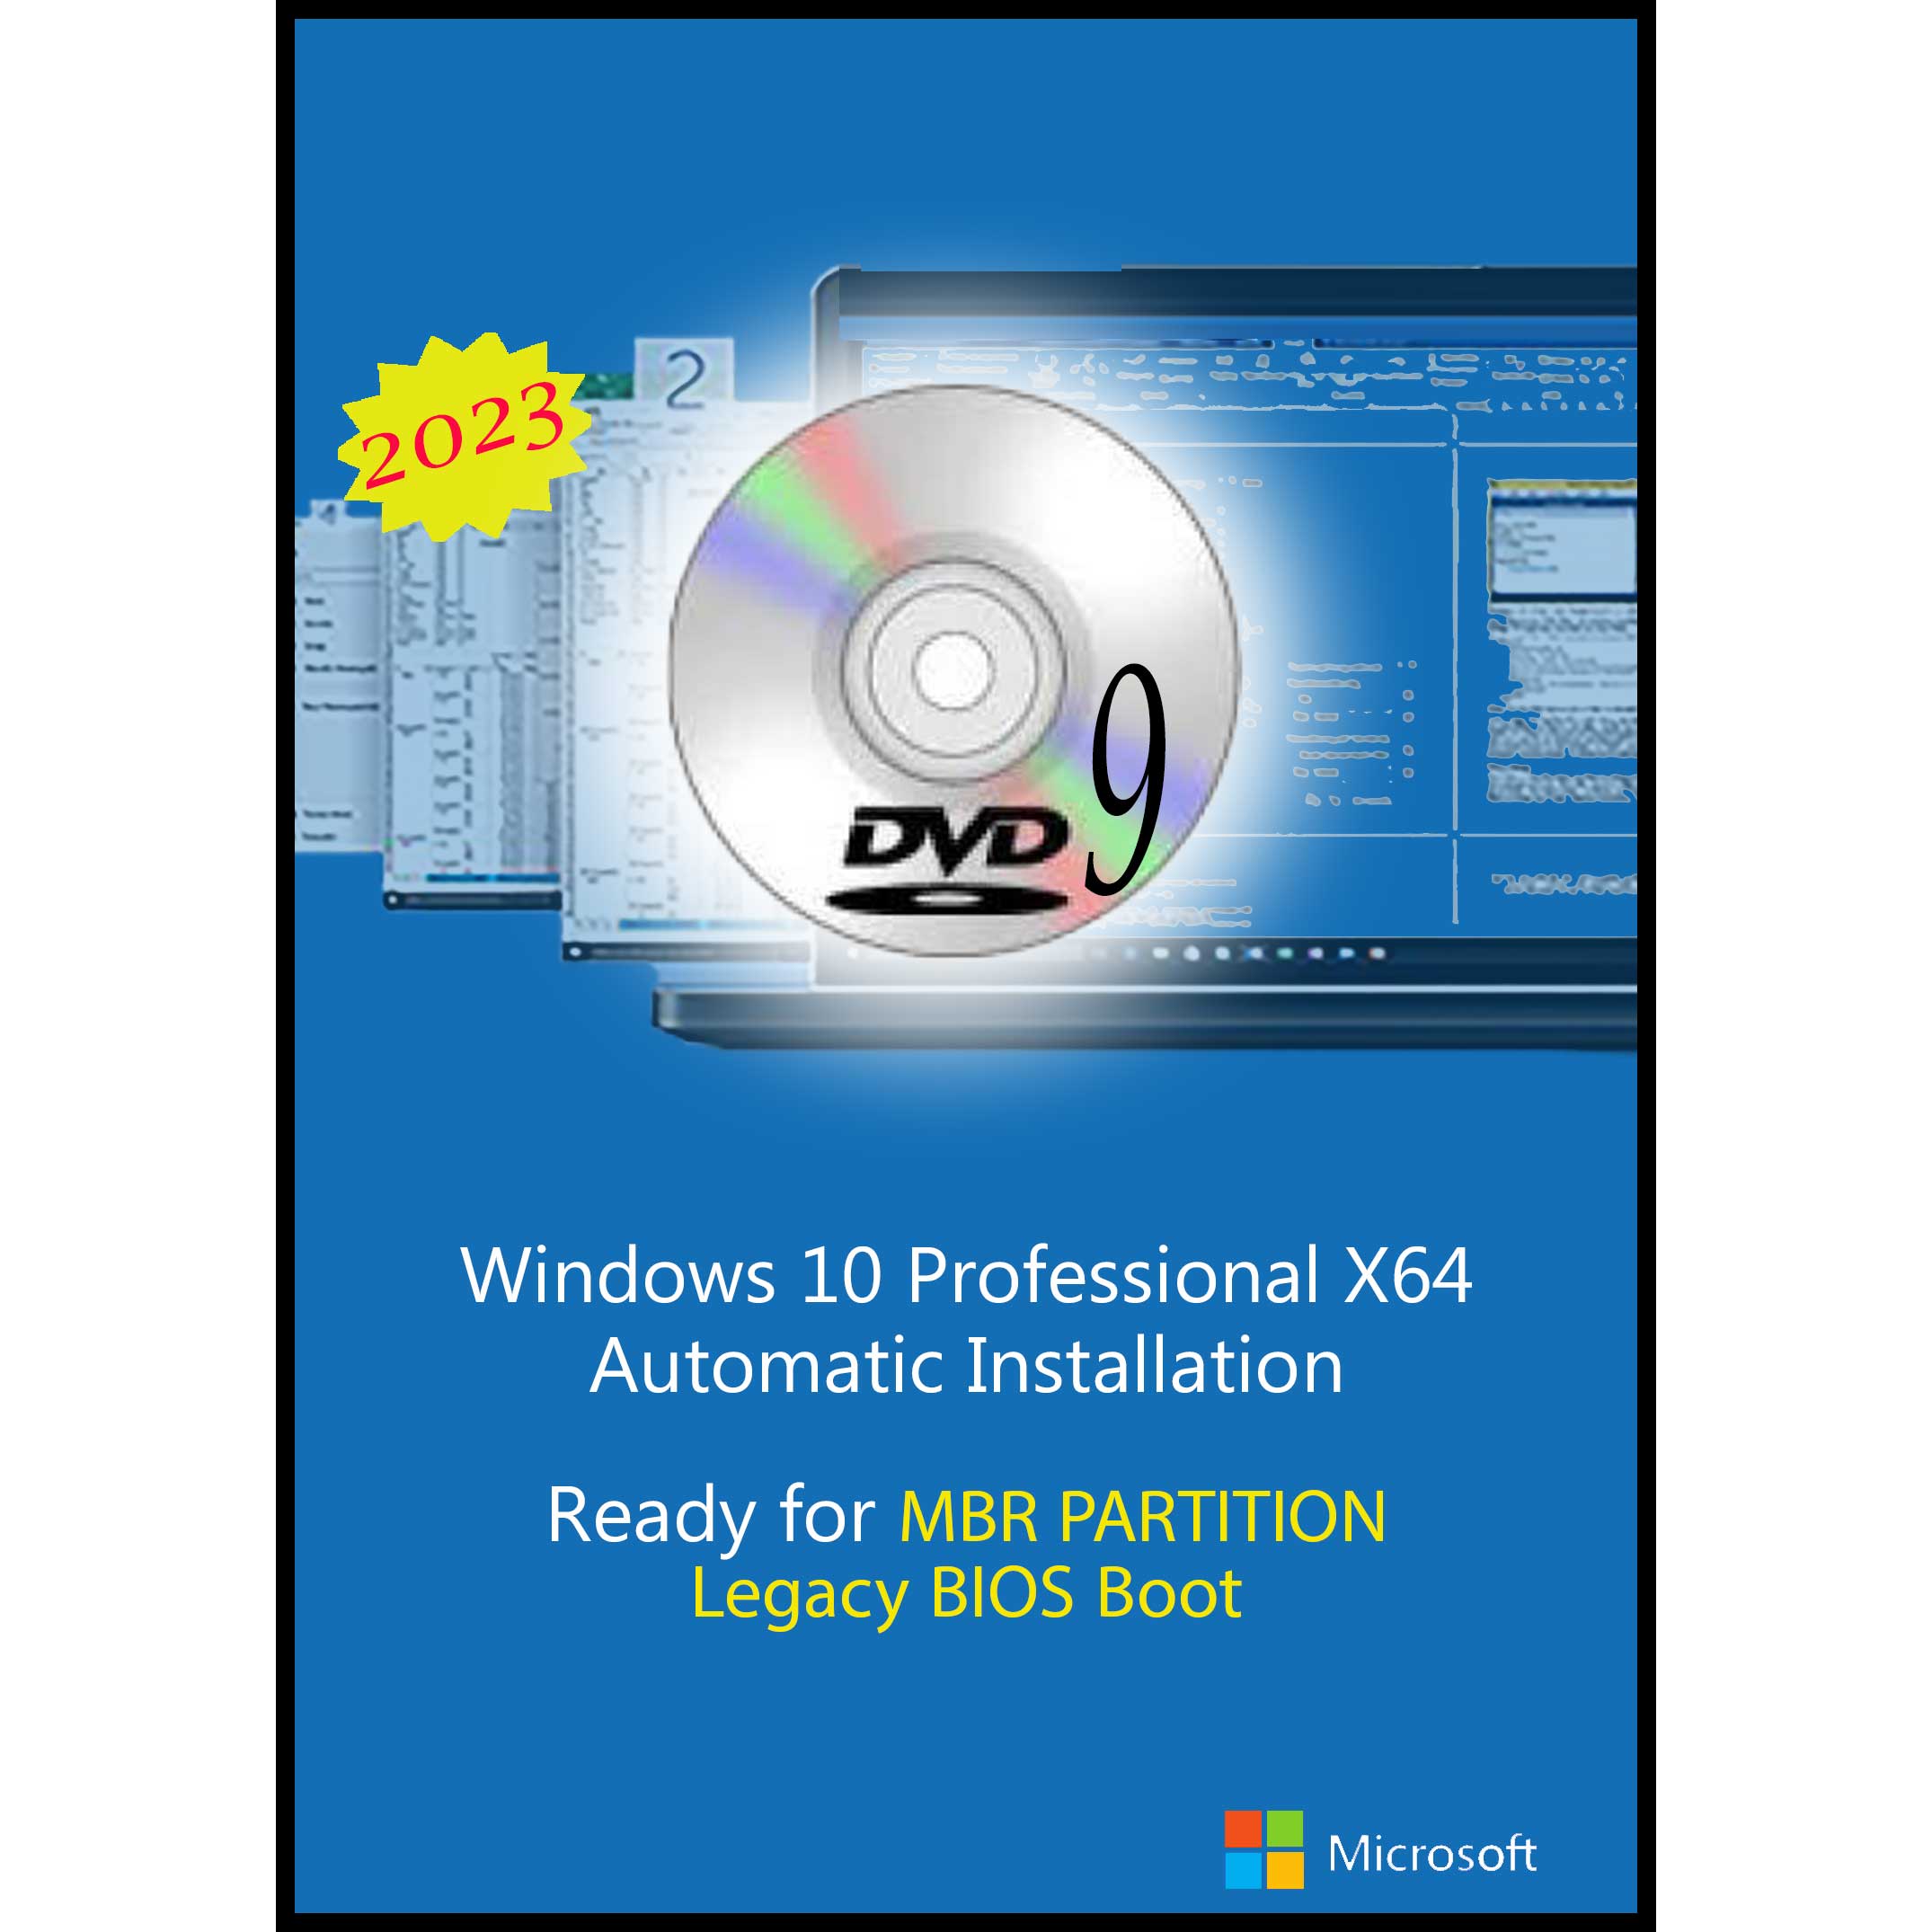 سیستم عامل Windows 10 Pro X64 2023 DVD9 Legacy Bios نشر مایکروسافت